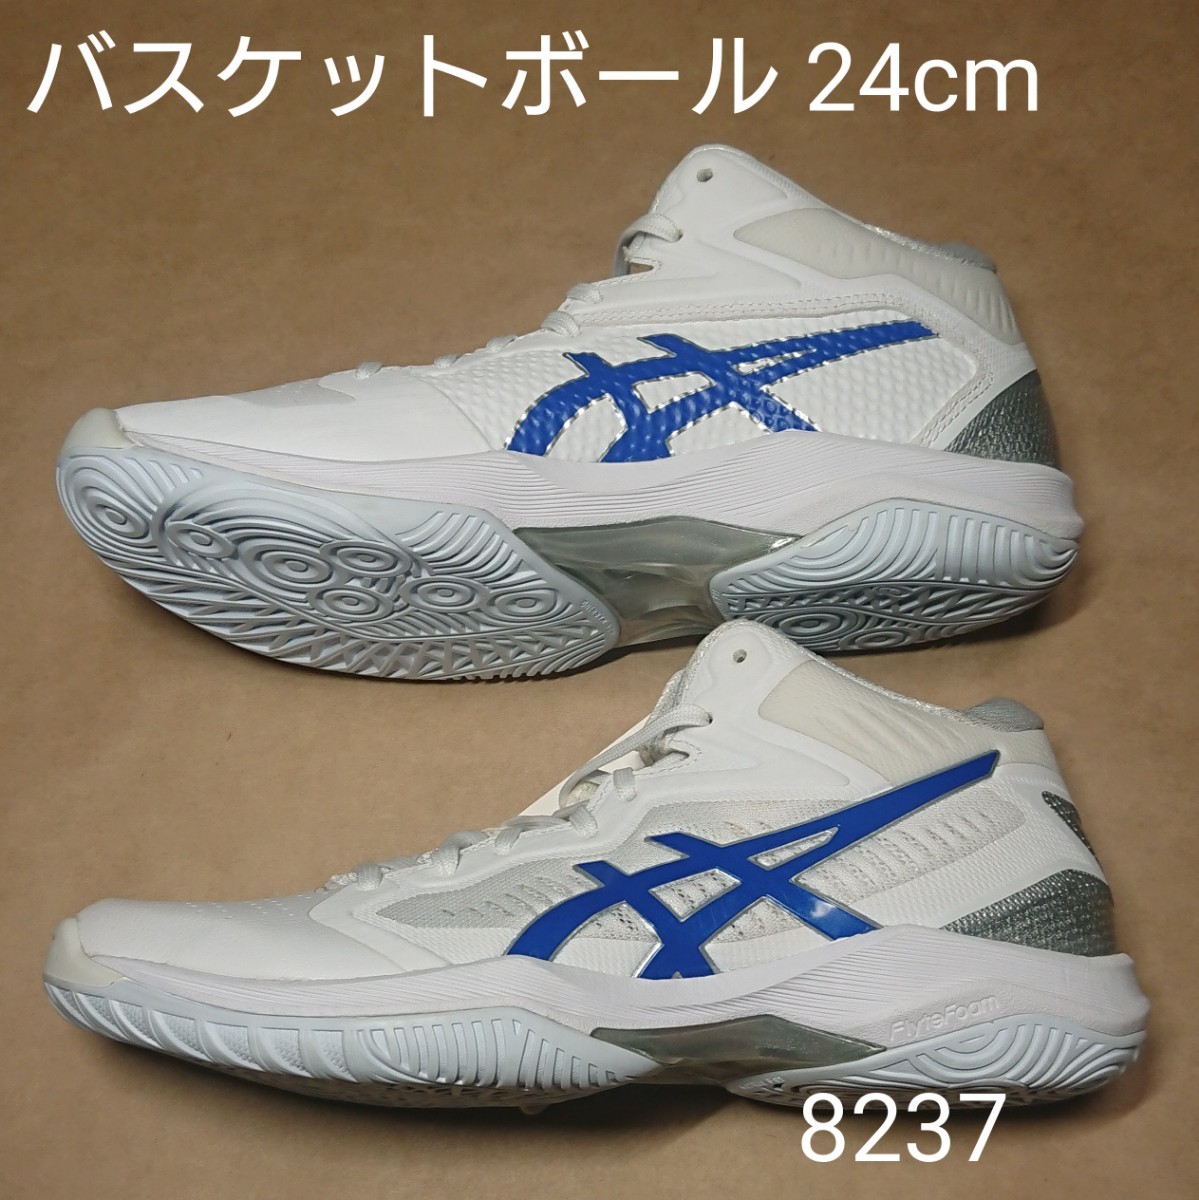 バスケットボールシューズ 24cm アシックス asics GELHOOP V12 8237